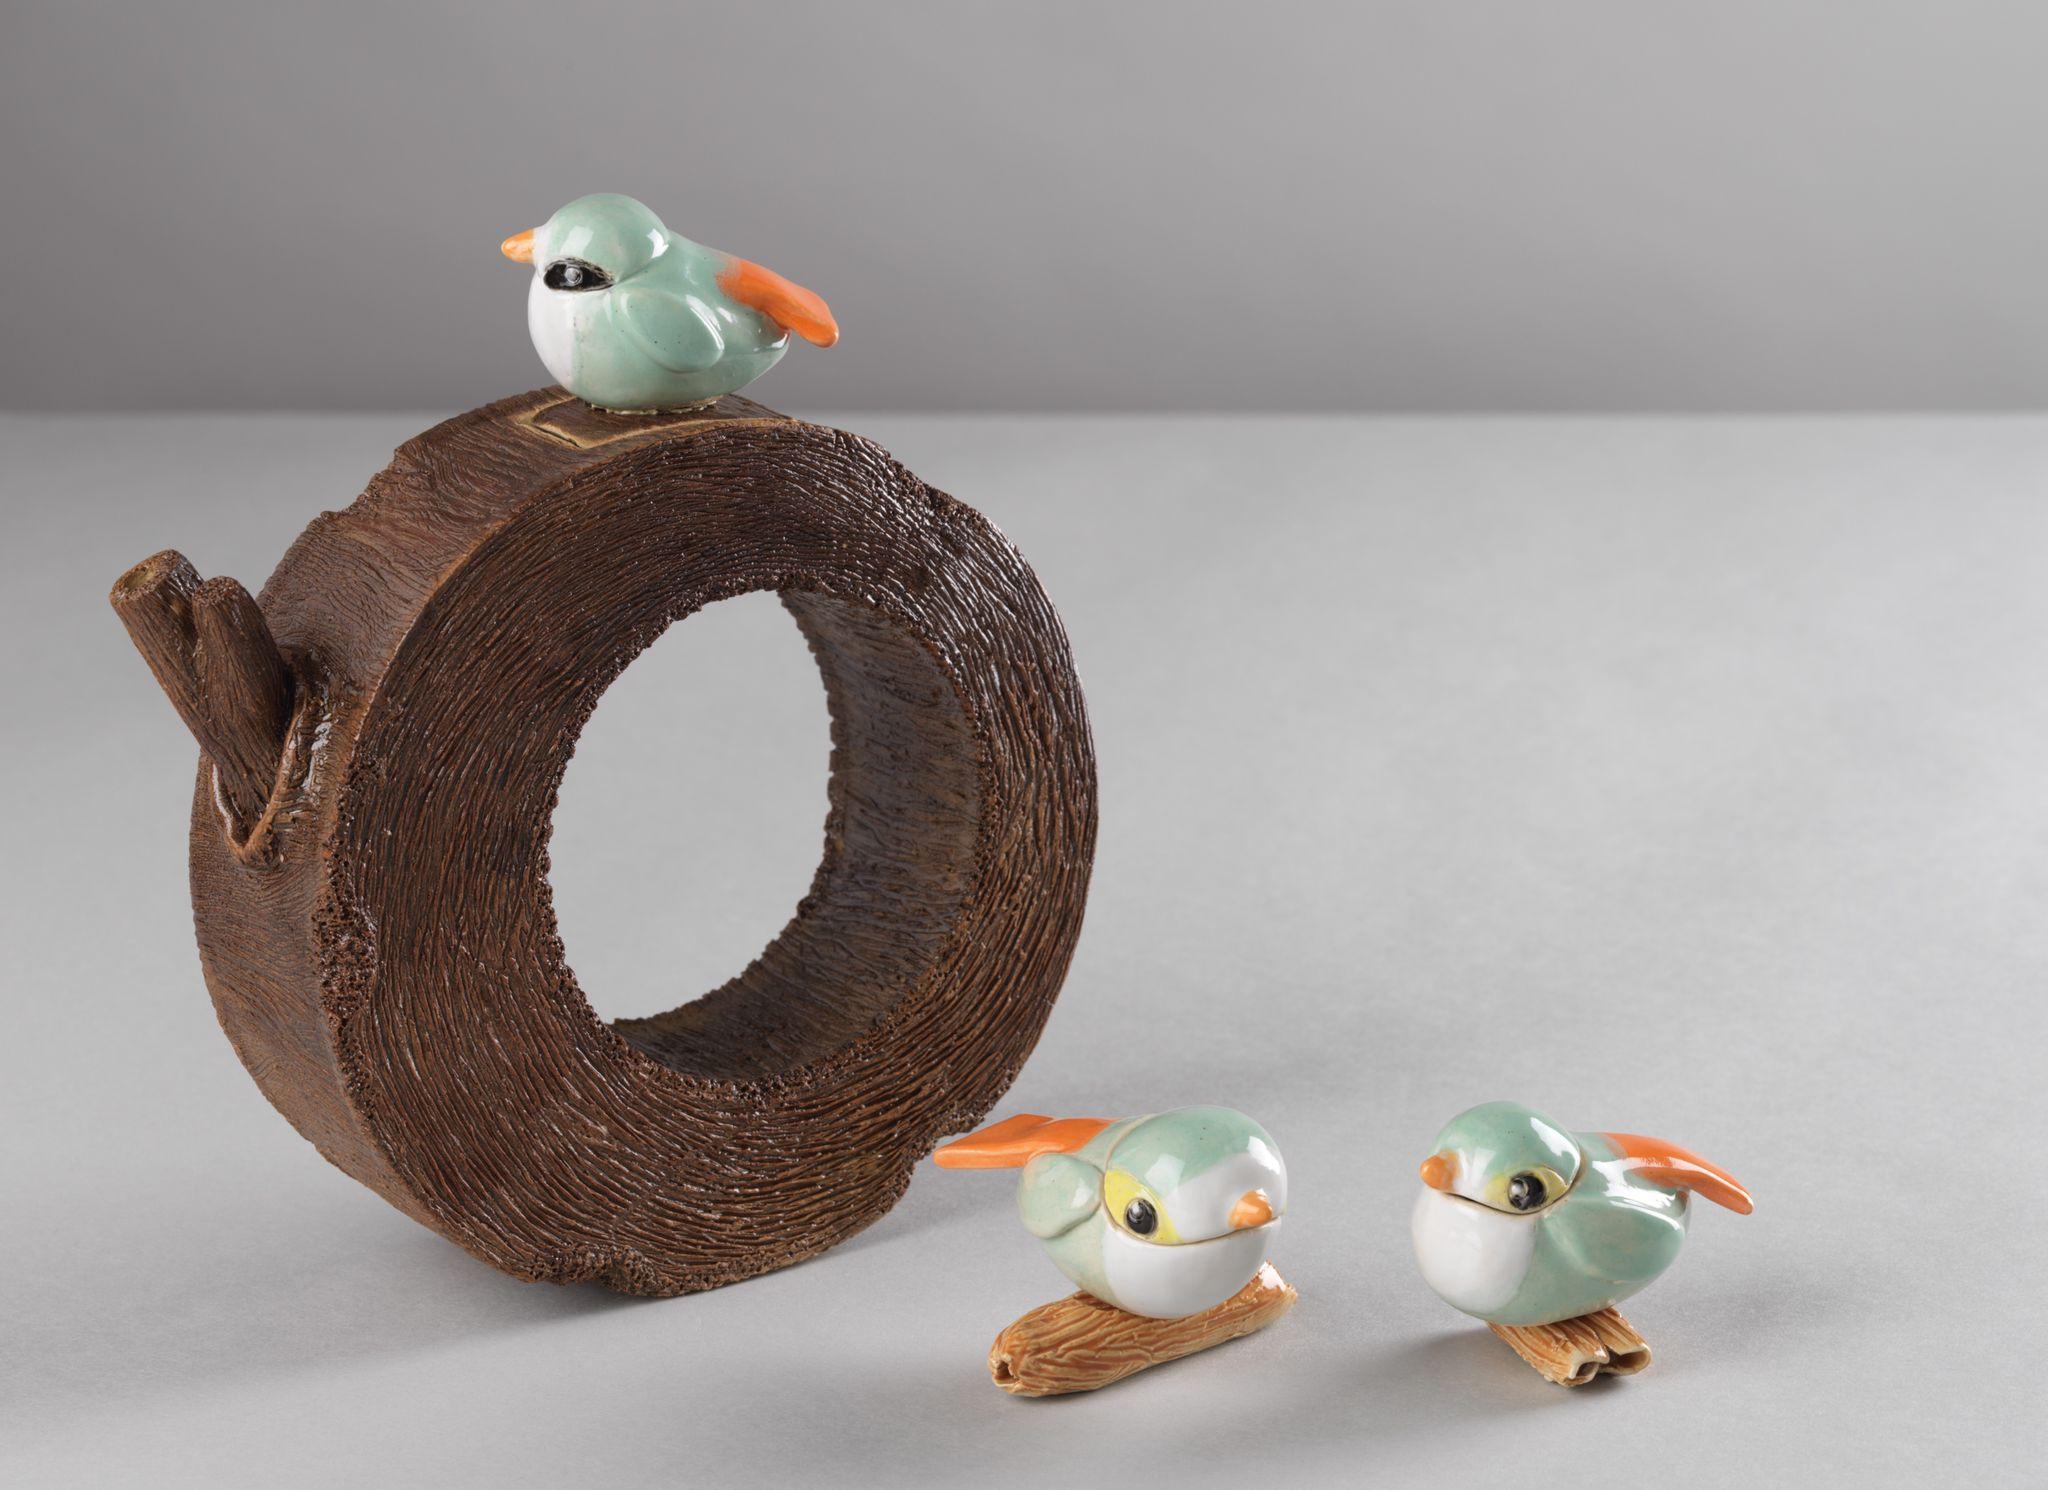 茶具文物馆现正举行「陶瓷茶具创作展览2021」。图示学生组冠军得主叶浩年的作品《休闲的小鸟》。